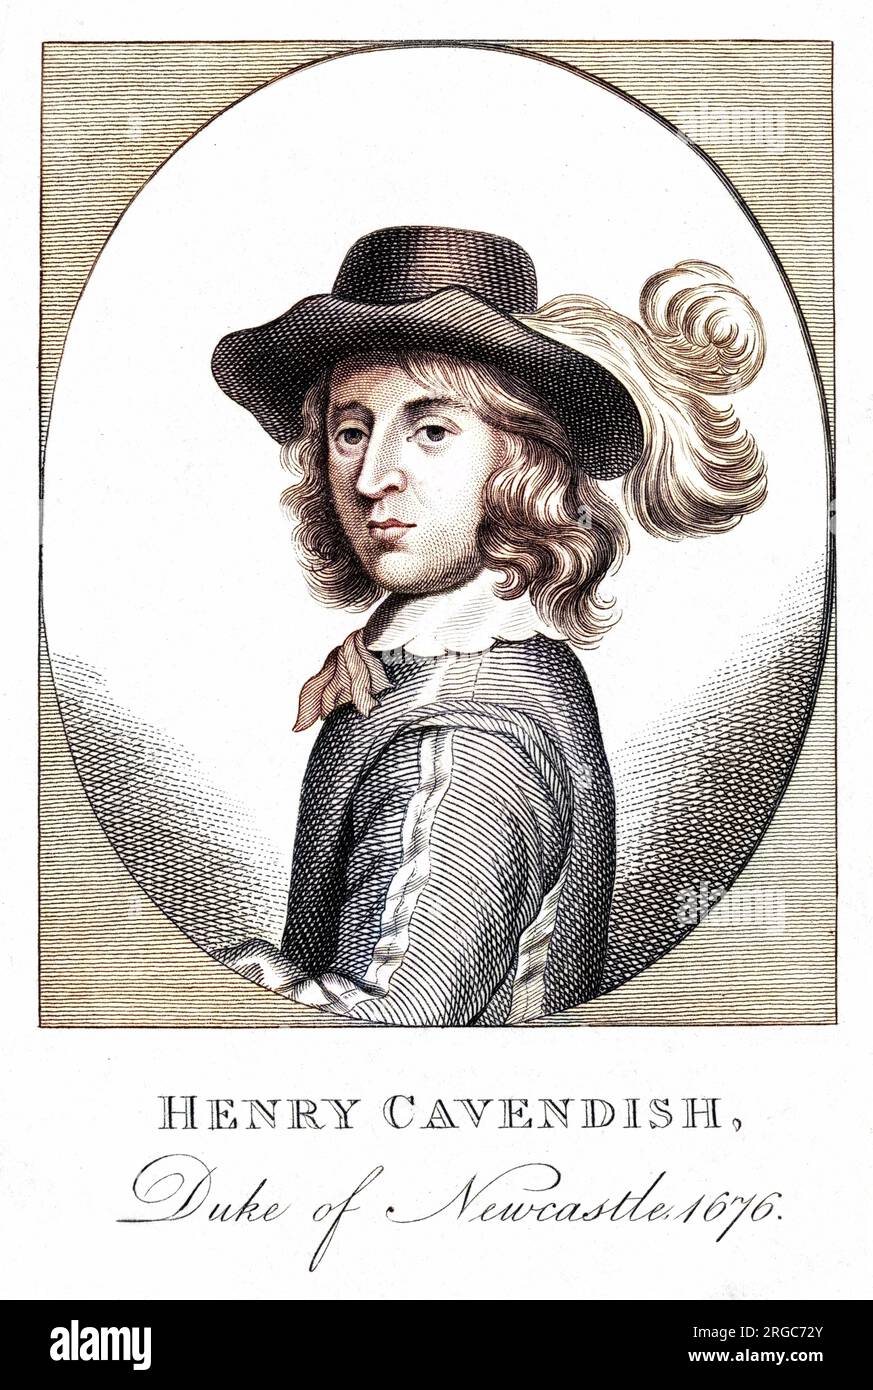 HENRY CAVENDISH, secondo duca di NEWCASTLE, nato e morto a Welbeck Abbey. Foto Stock